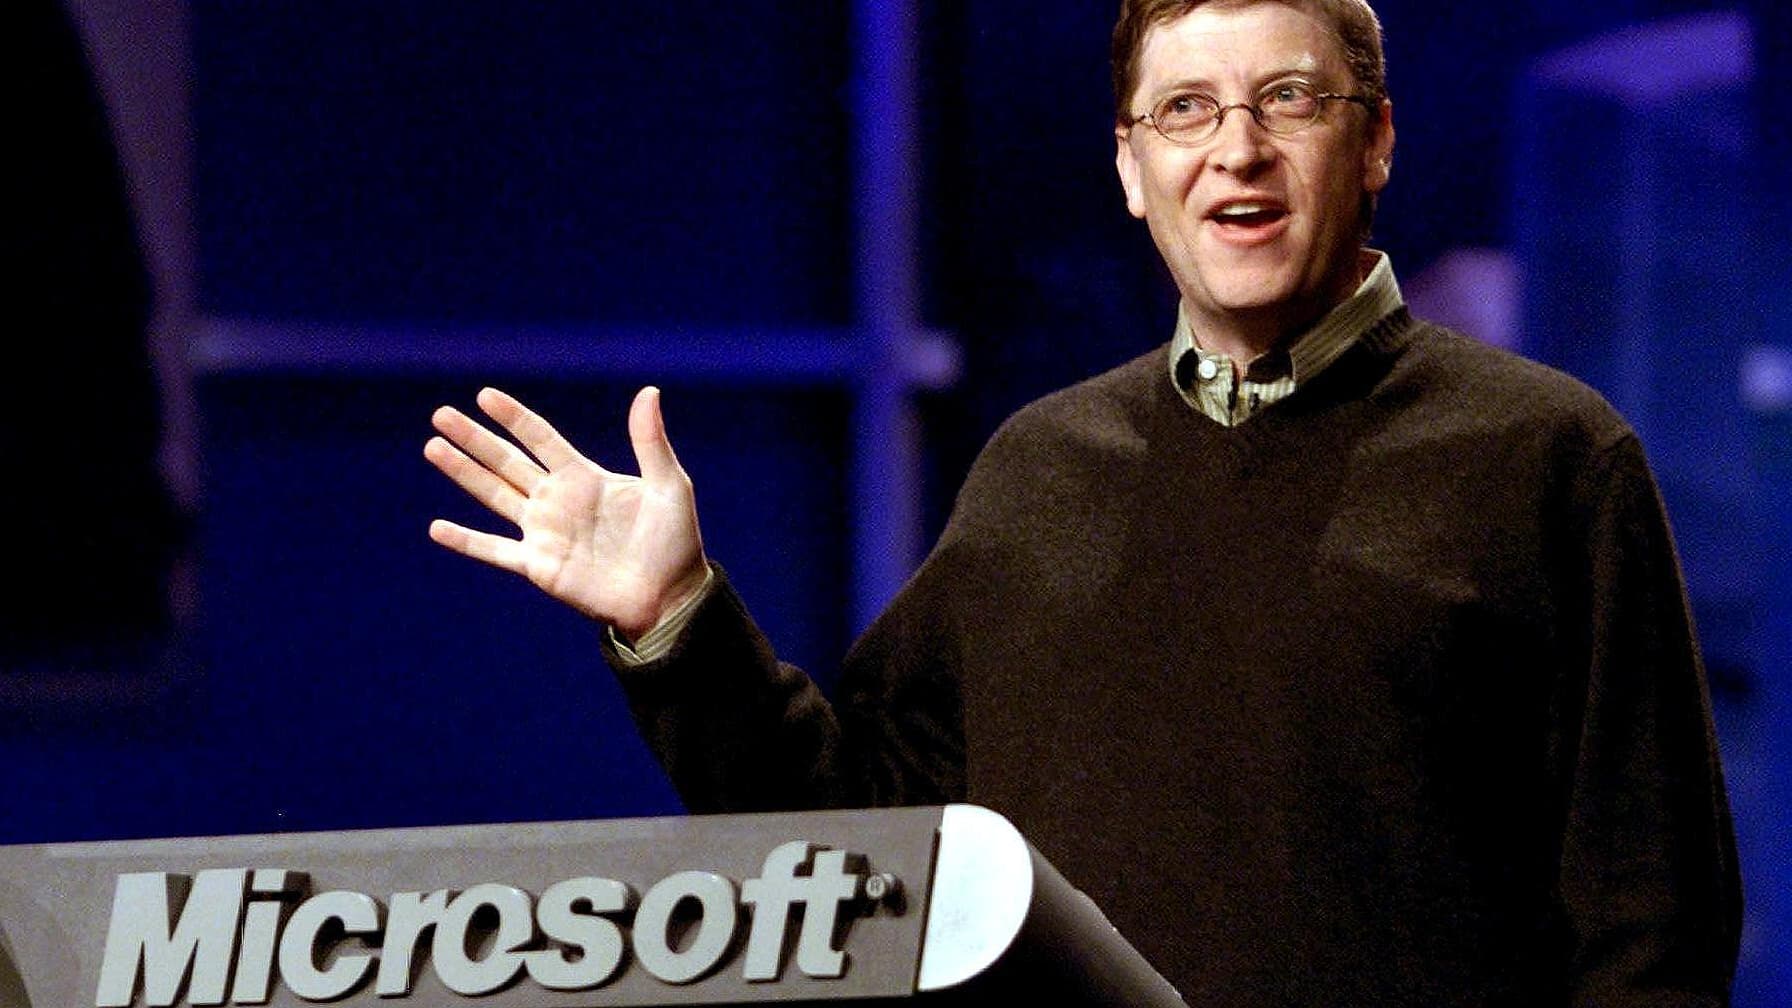 Geobsedeerd door platen, speelde Bill Gates zo vaak Mijnenveger dat het spel hem afnam